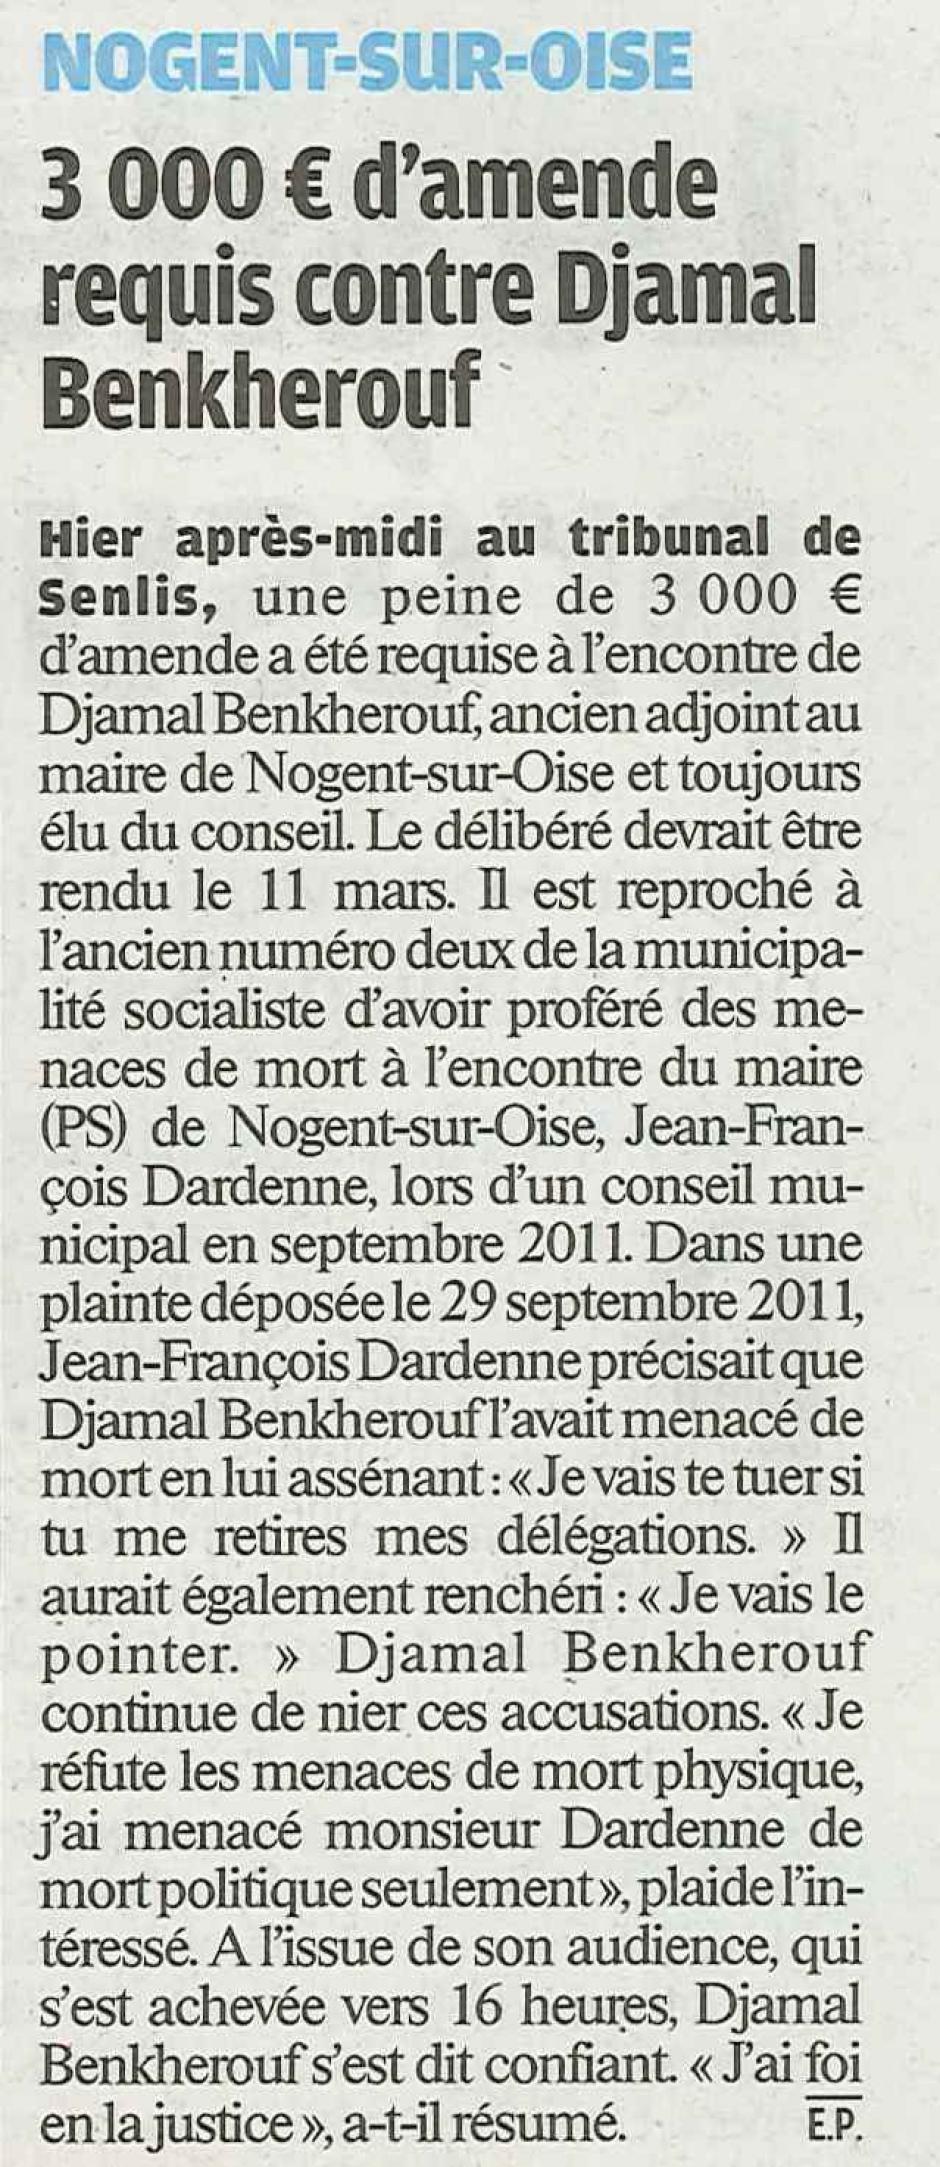 20120209-LeP-Nogent-sur-Oise-3 000 € d'amende requis contre Djamal Benkherouf